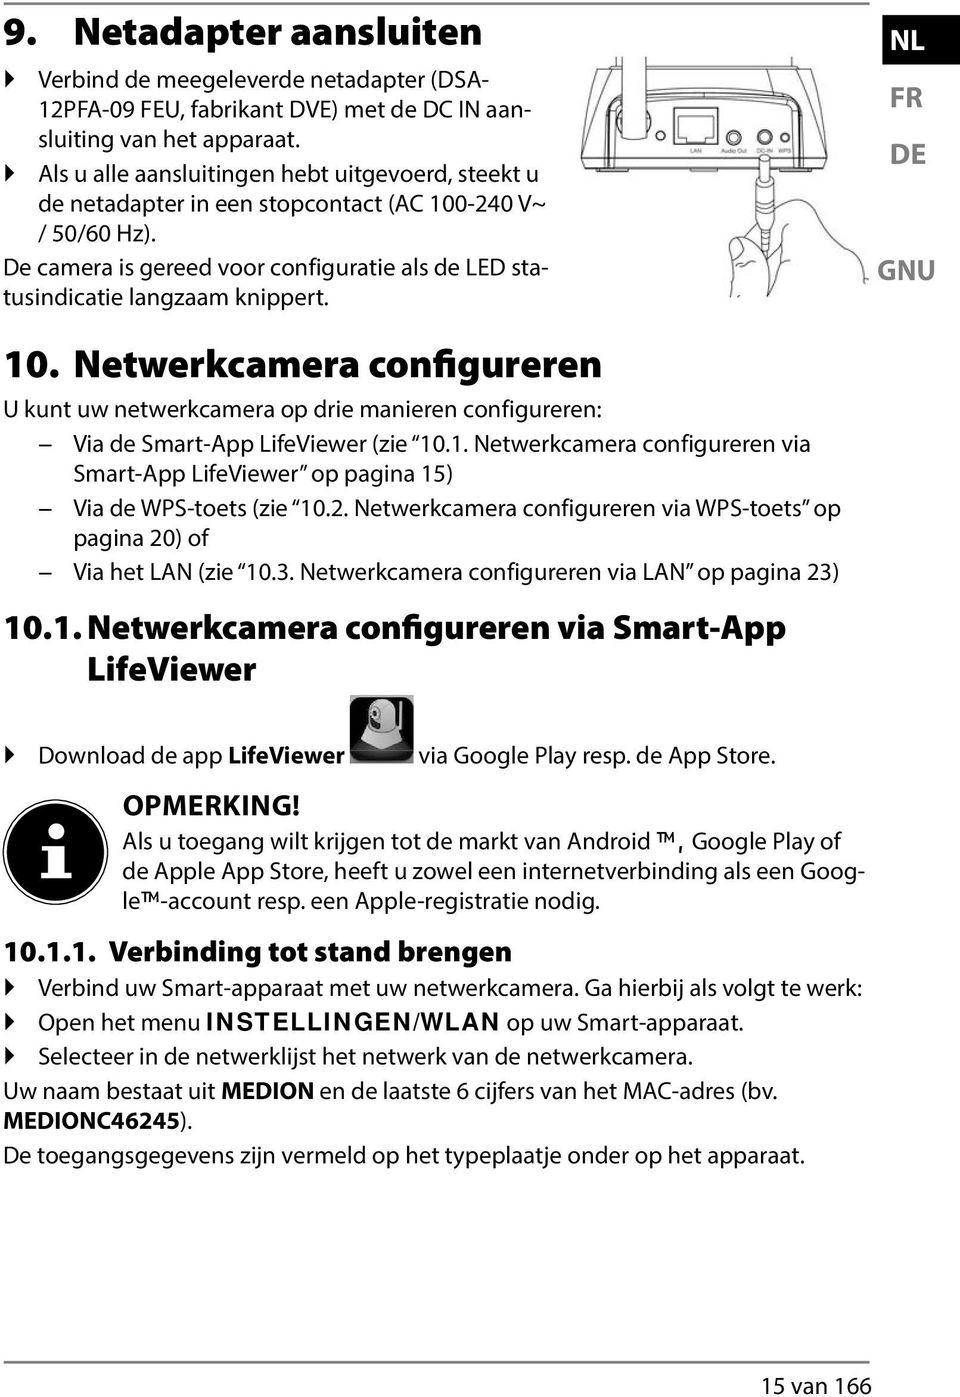 NL FR DE GNU 10. Netwerkcamera configureren U kunt uw netwerkcamera op drie manieren configureren: Via de Smart-App LifeViewer (zie 10.1. Netwerkcamera configureren via Smart-App LifeViewer op pagina 15) Via de WPS-toets (zie 10.